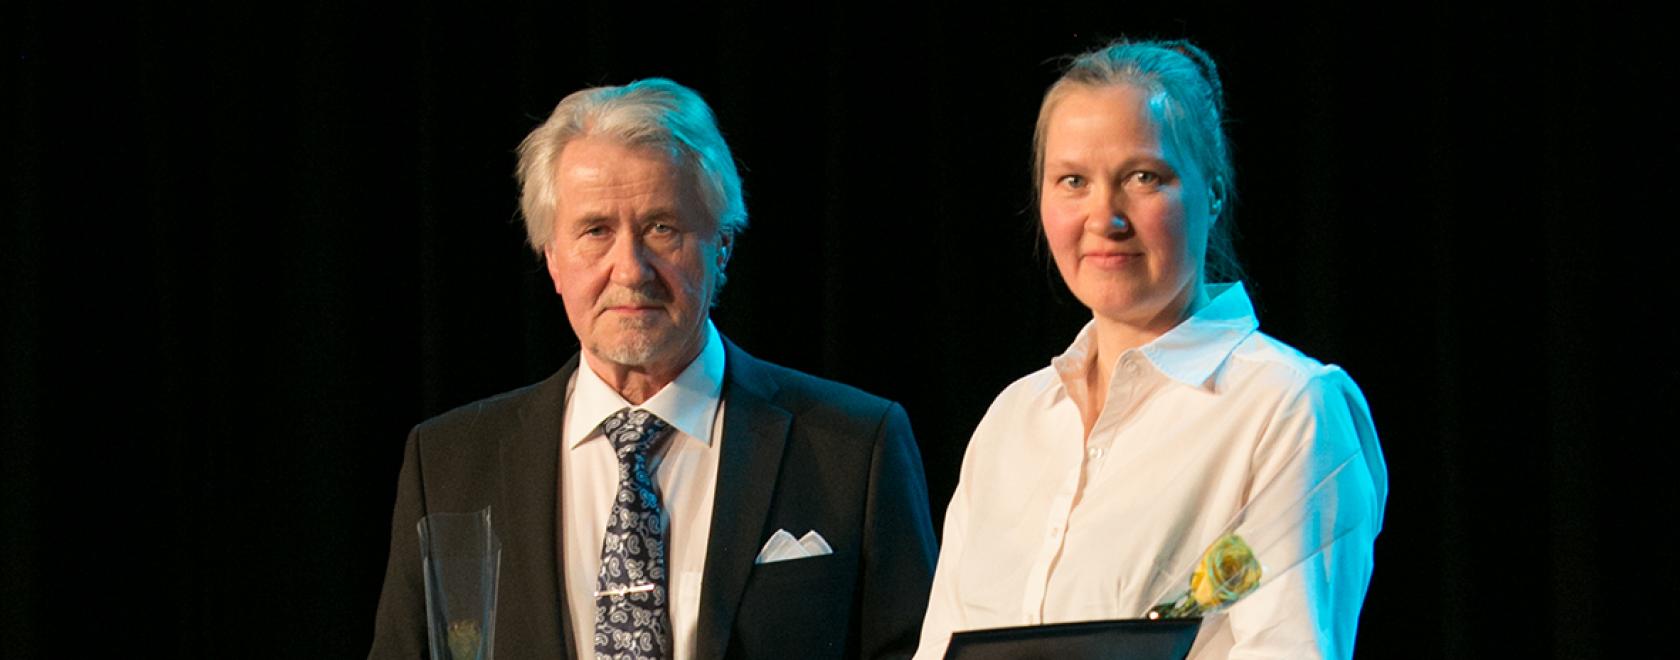 Näytelmäkirjailija Eero Shroderus sai Elias Lönnrot -mitalin ja taiteilija Ulla Schroderus palkinnon vuosijuhlassa Suomussalmella 2014. Kuva: Risto Mäläskä 